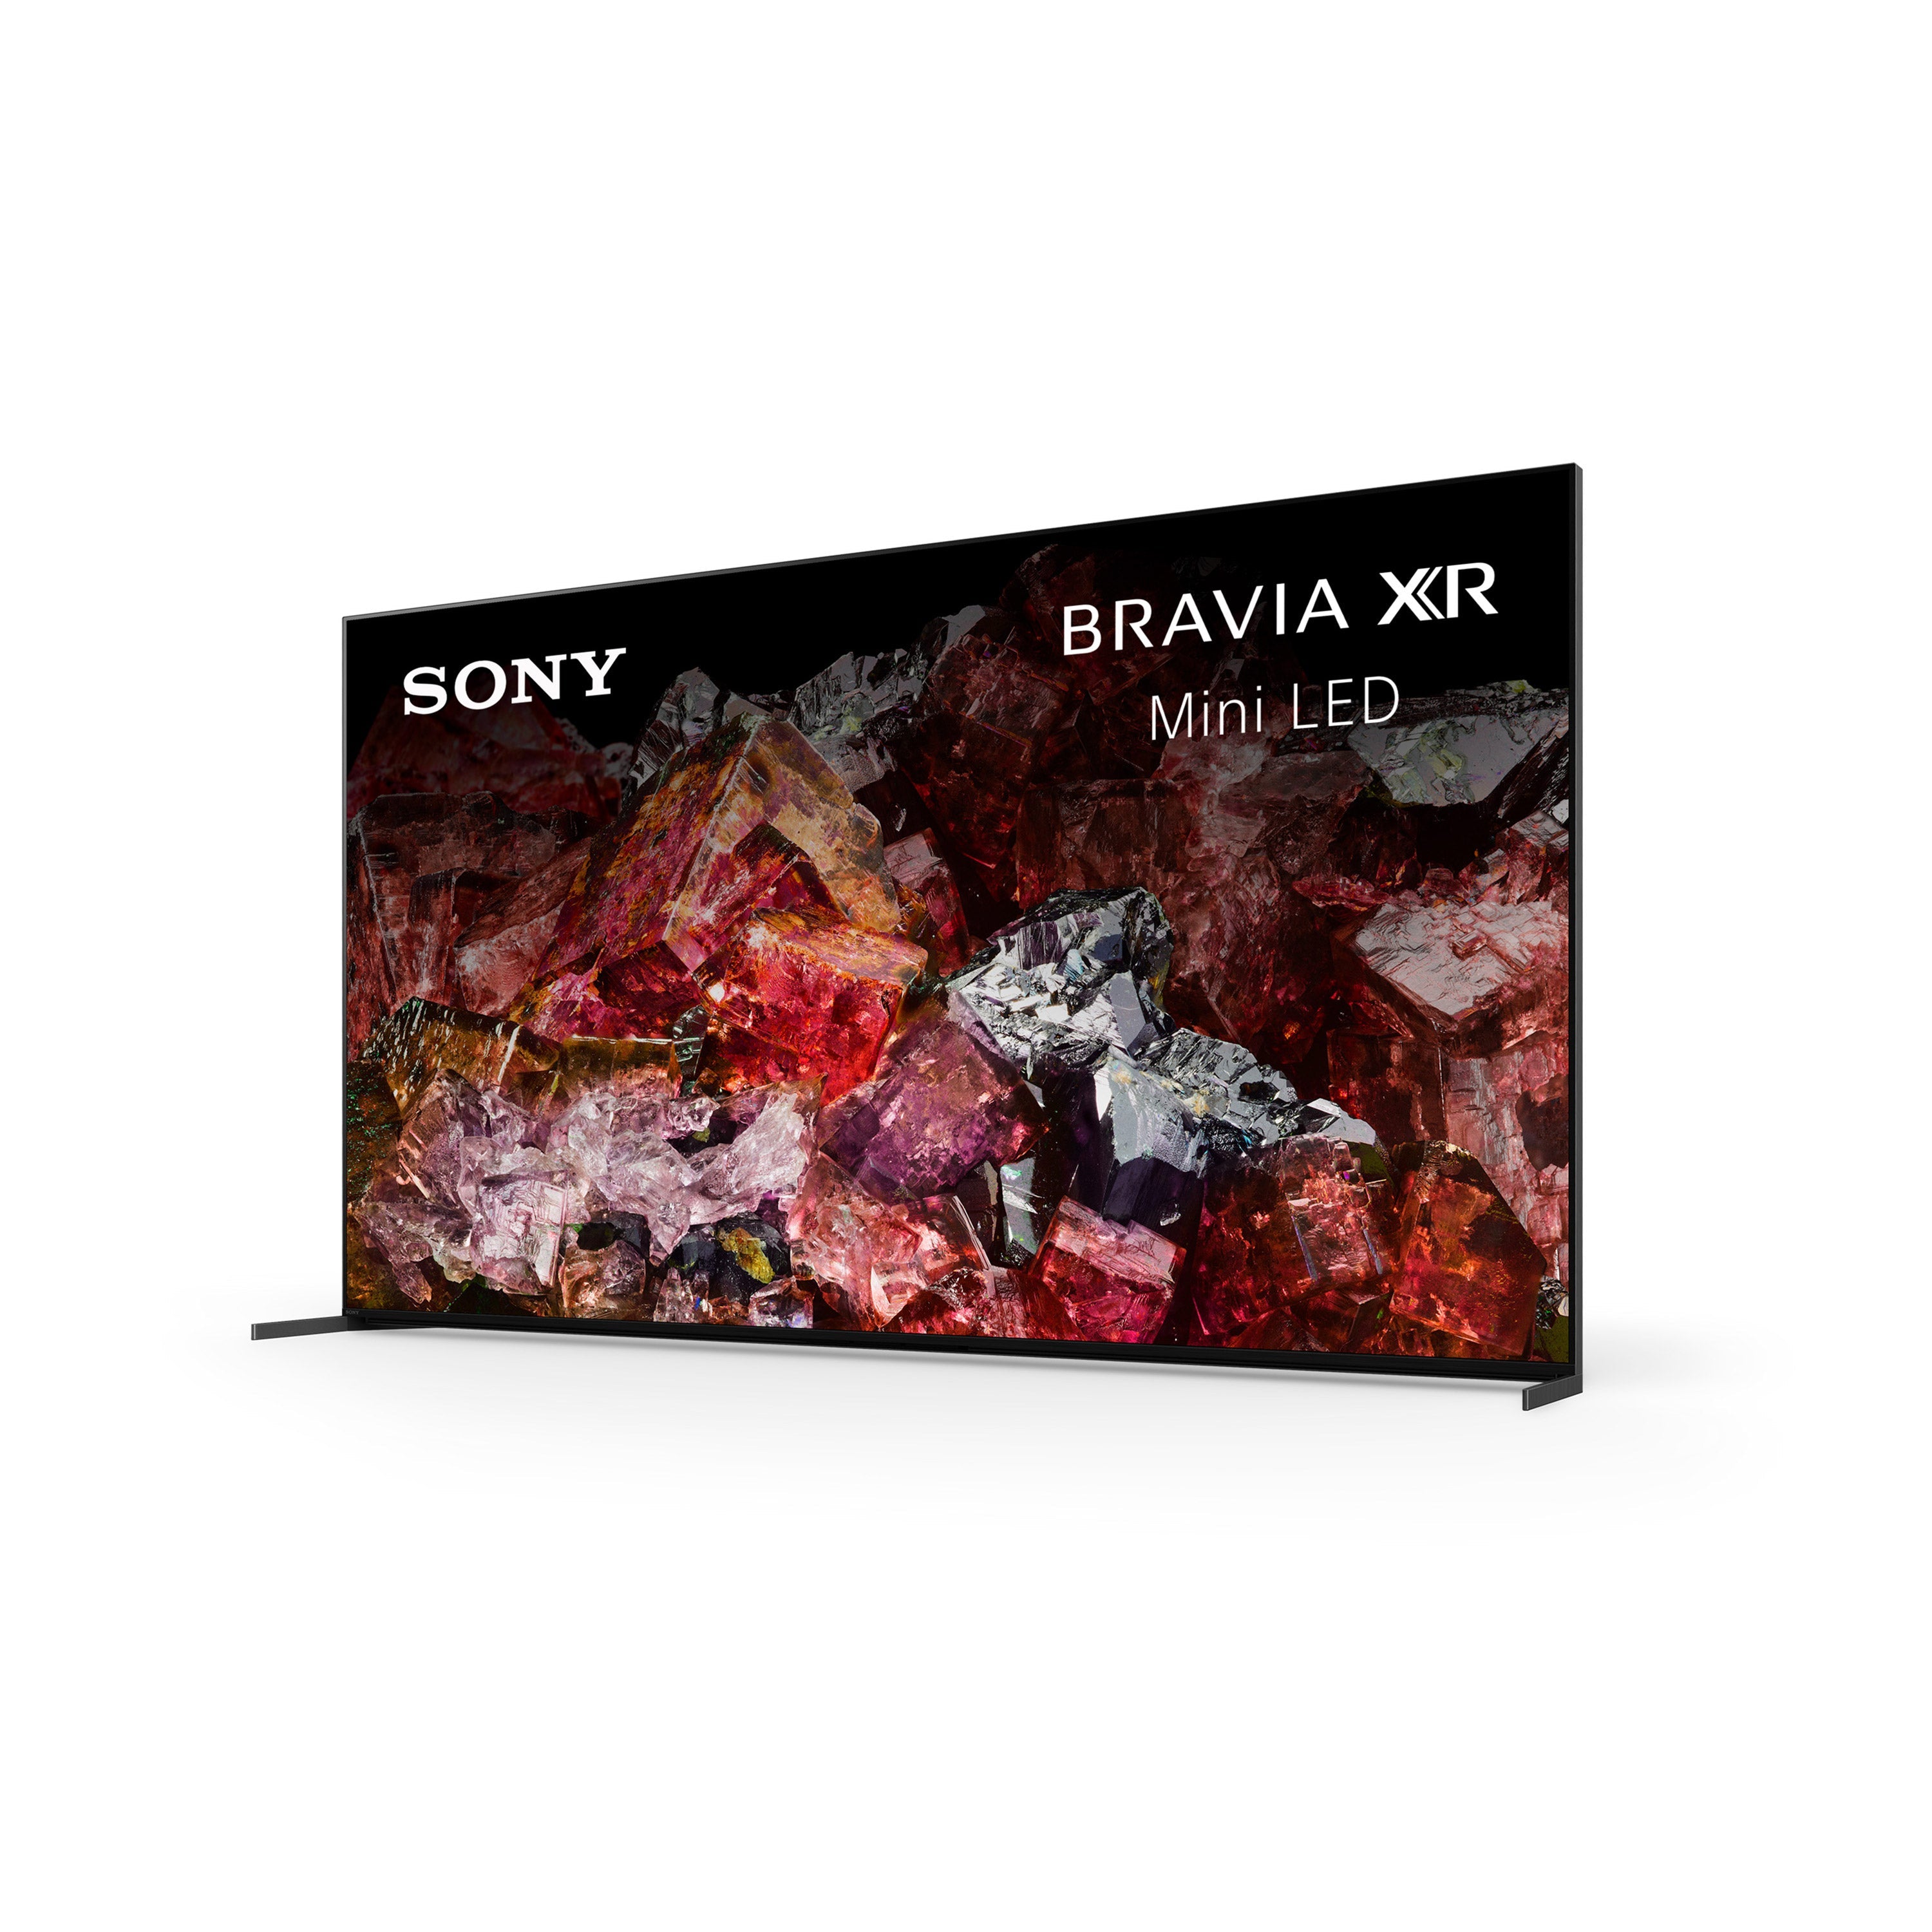 Sony X95L BRAVIA XR | Mini LED | 4K HDR TV | Smart TV (Google TV)